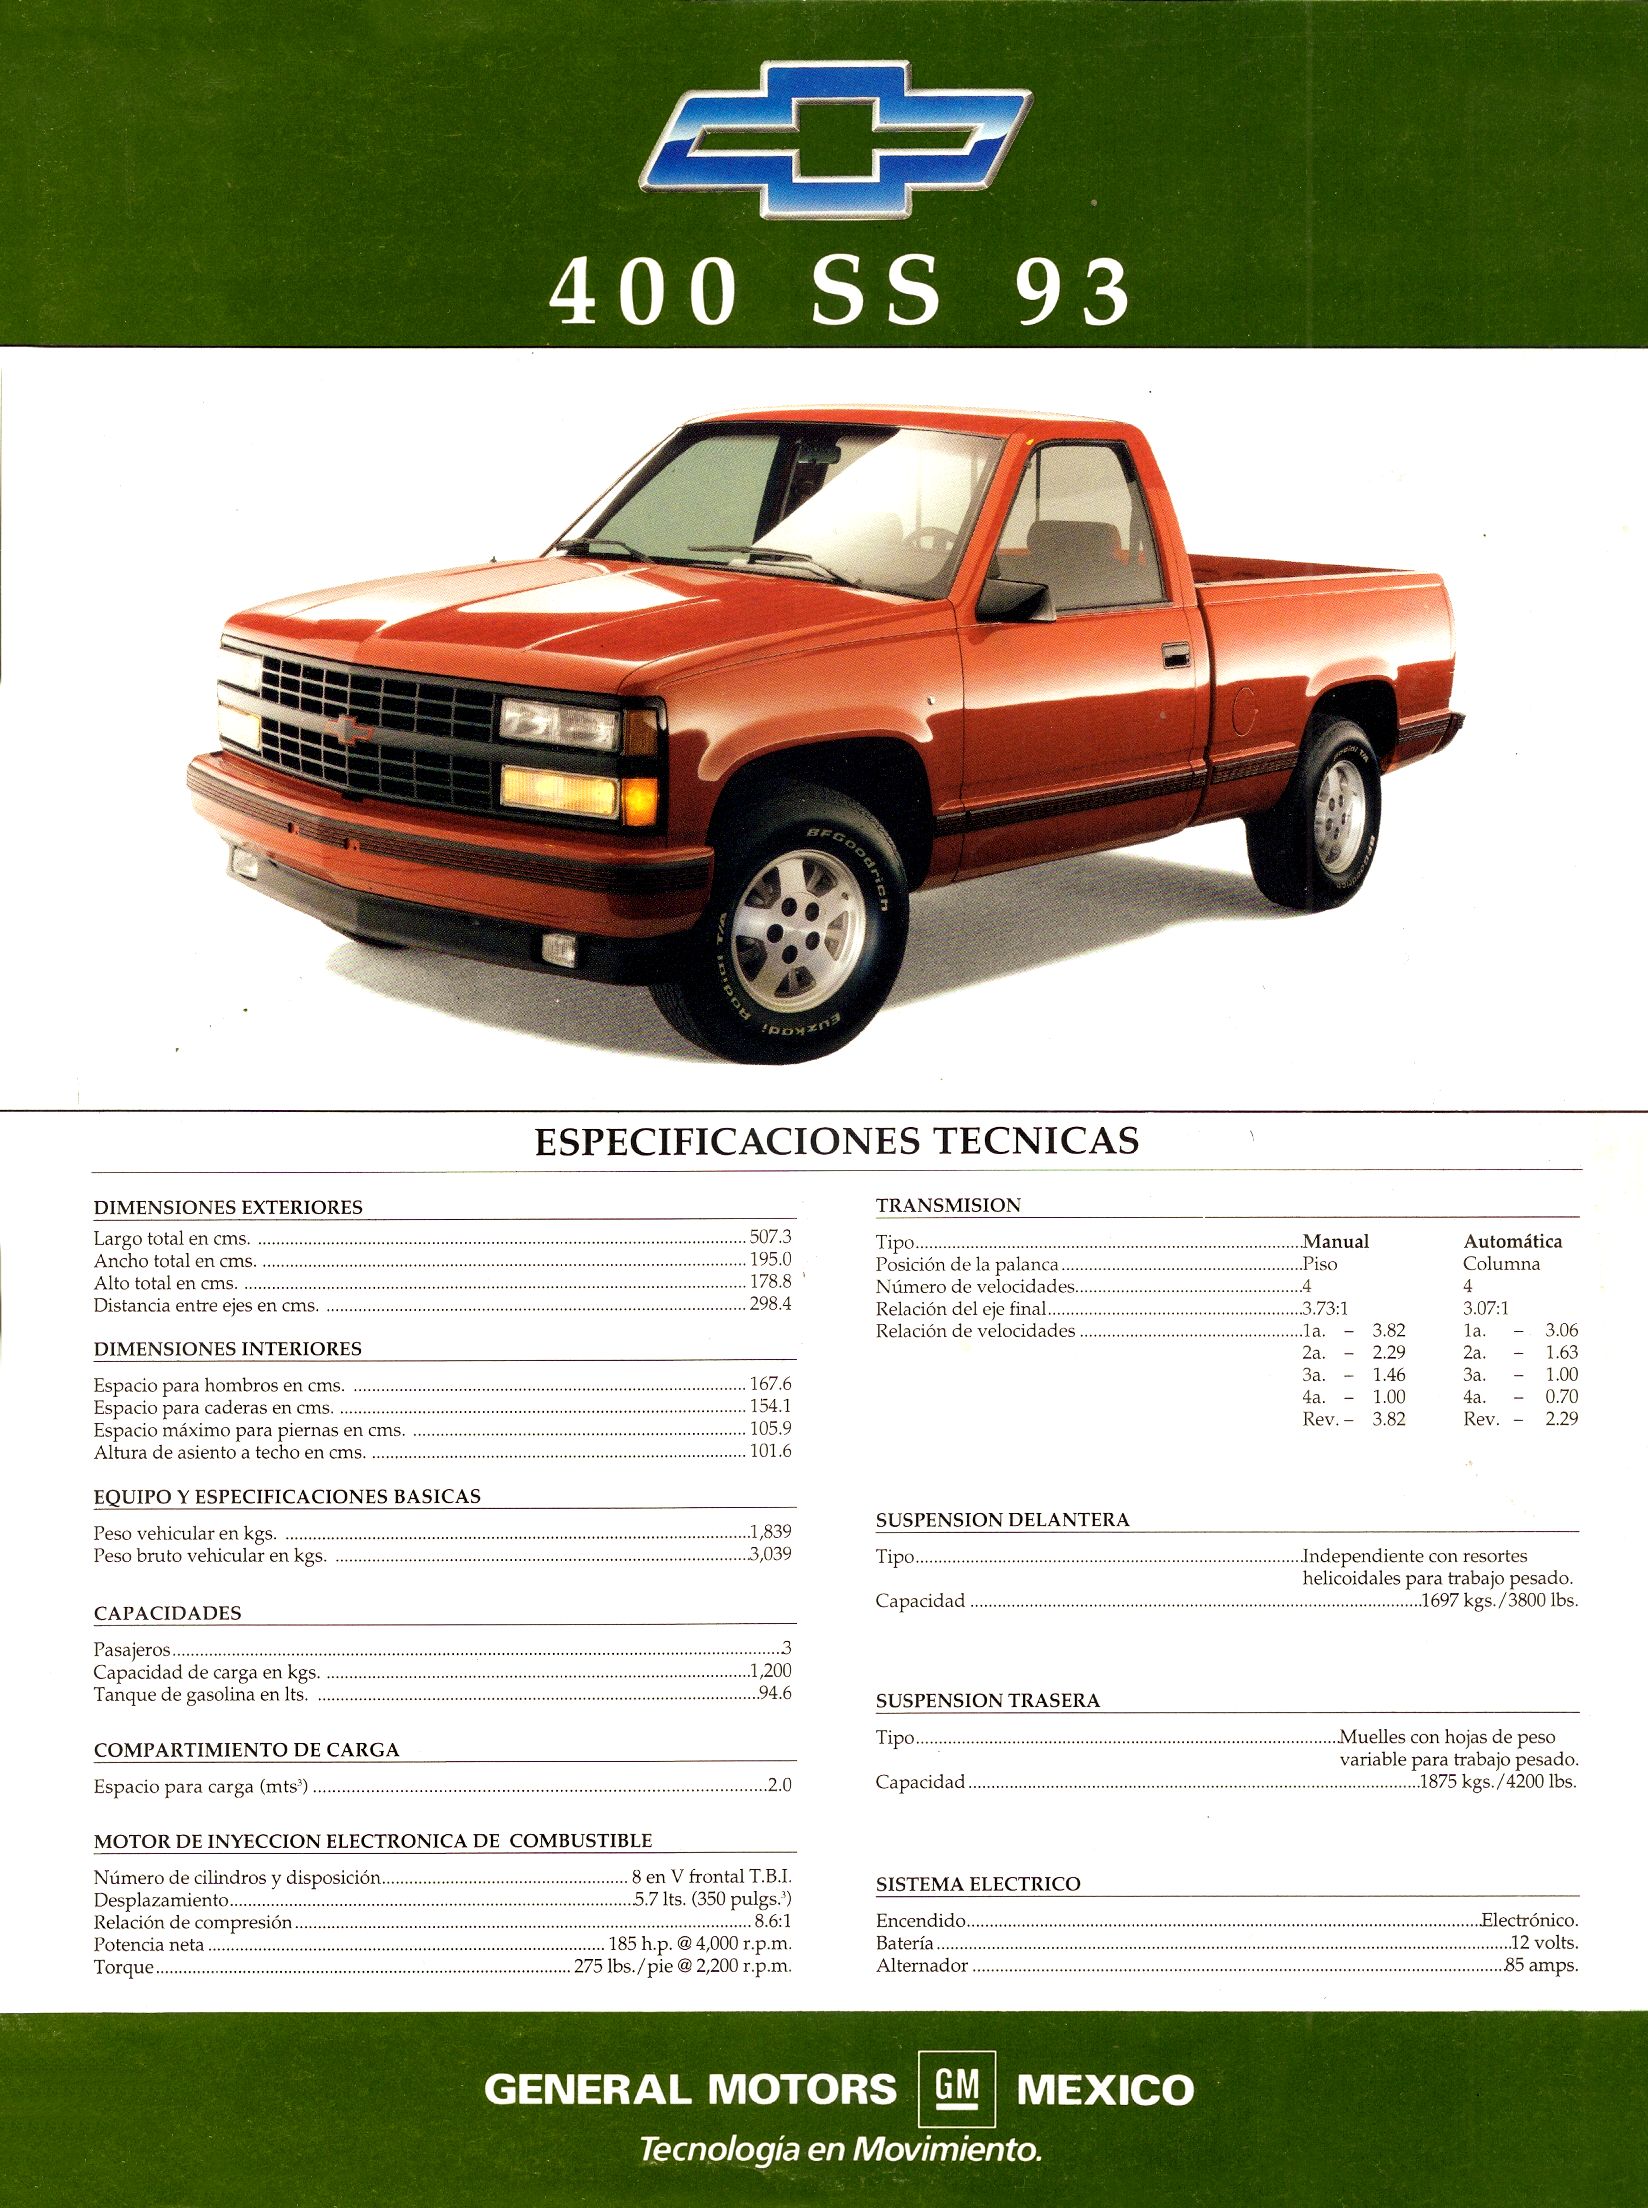 1993 Chevrolet 400SS & Maxi Cab brochure